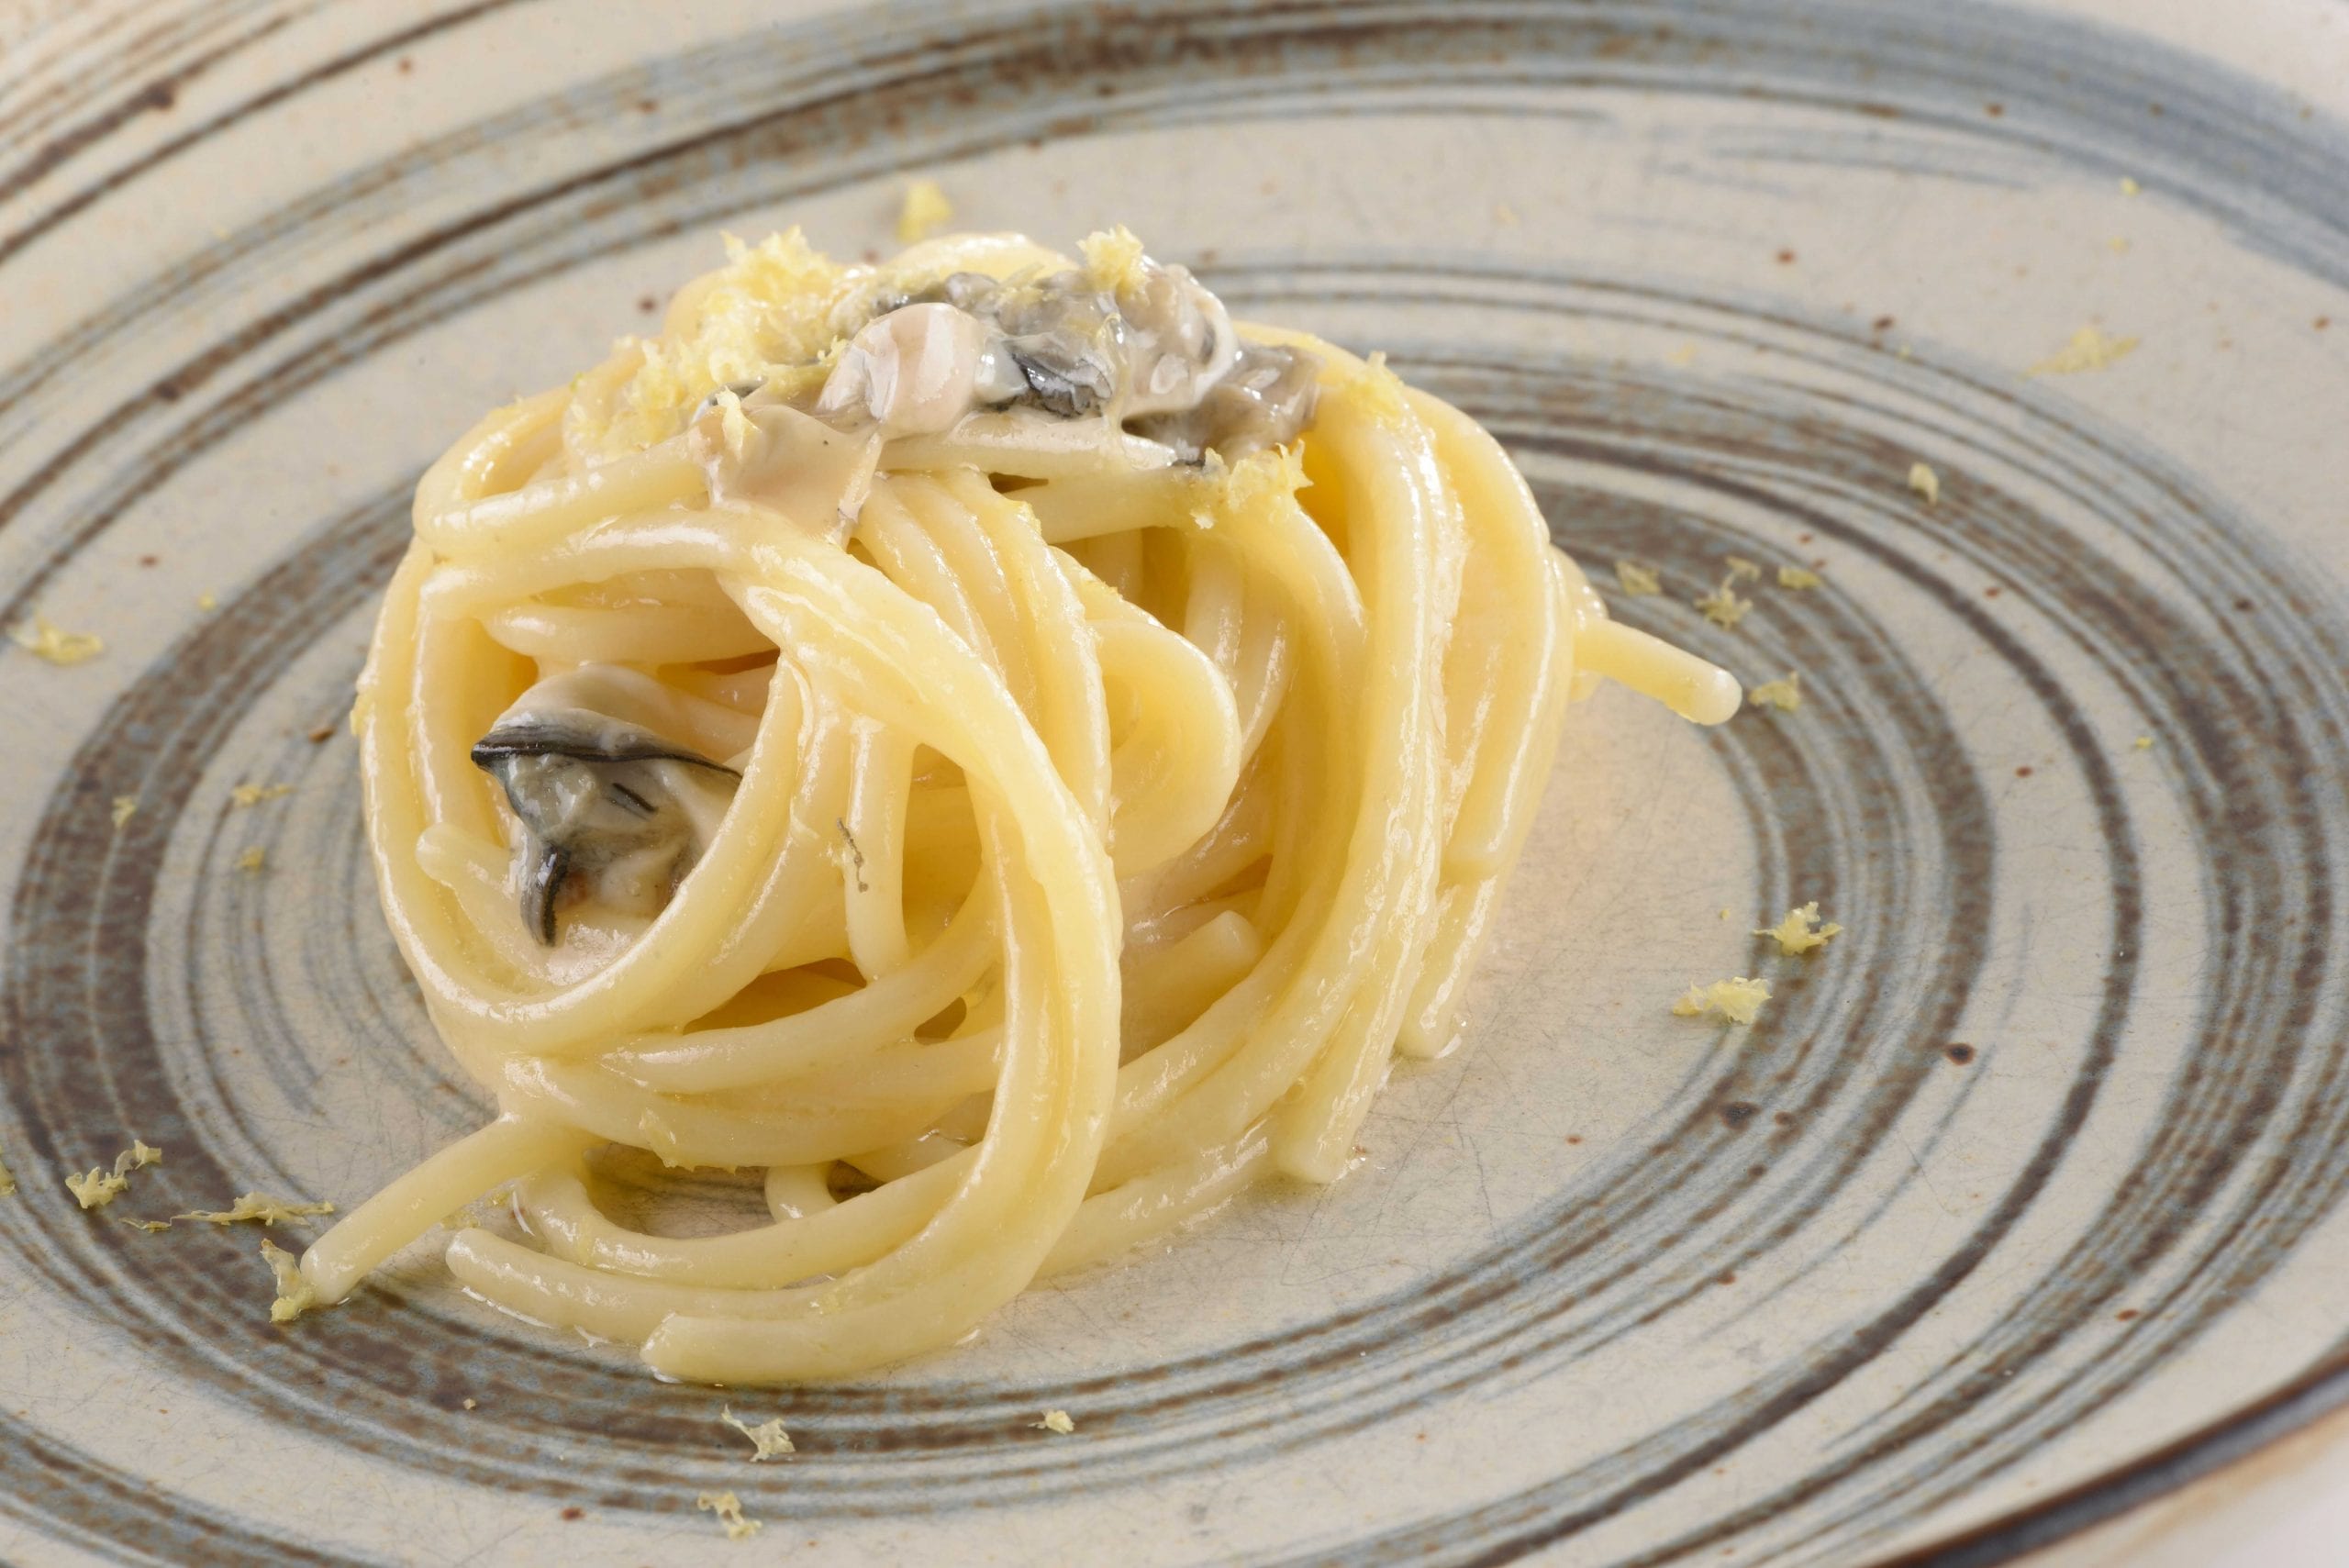 Spaghettone "Felicetti", burro affumicato alla quercia, ostriche del Po', bergamotto e distillato d'uva Prime Uve Nere